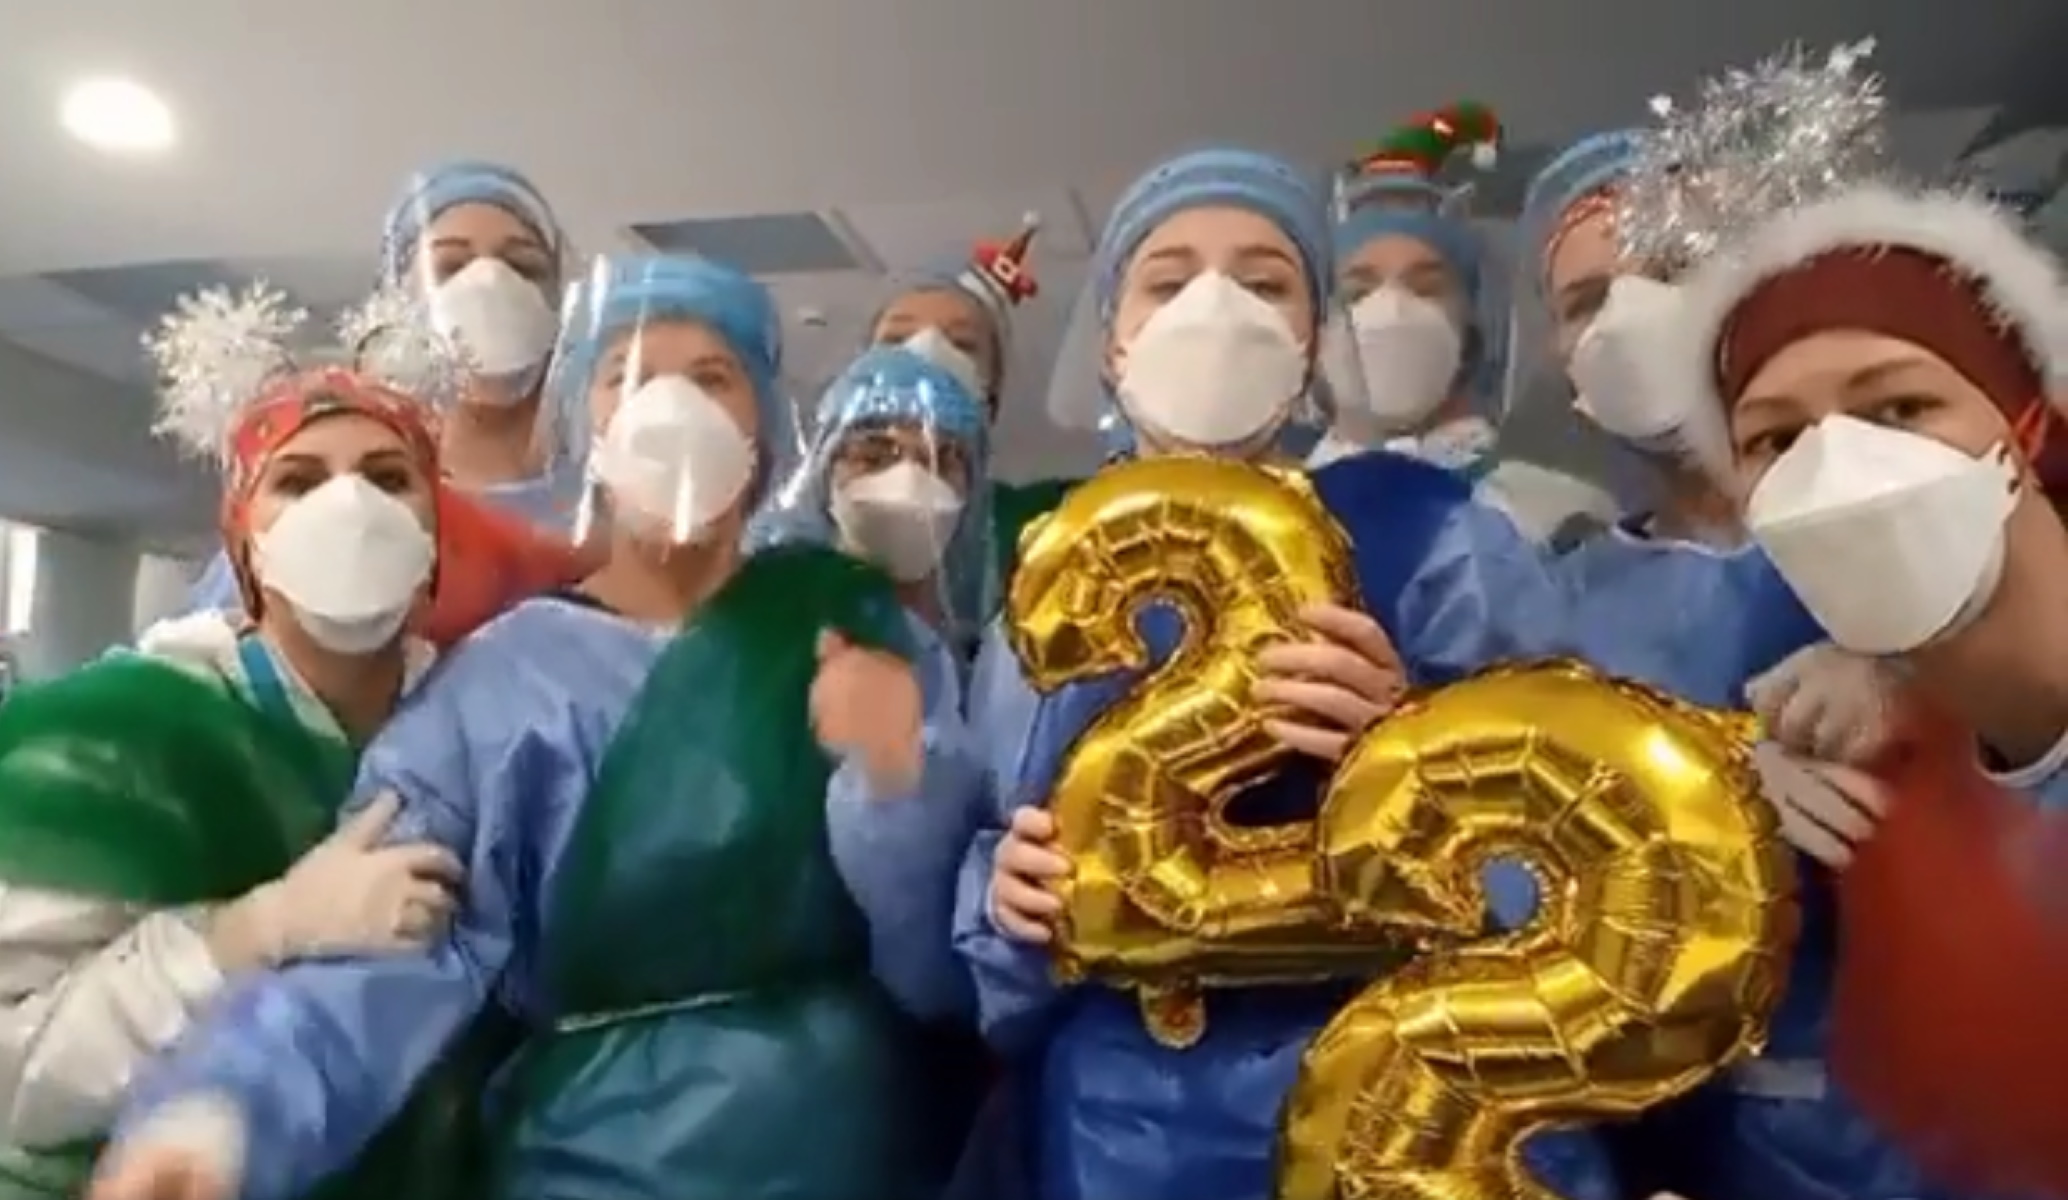 Παραμονή Πρωτοχρονιάς μέσα στη ΜΕΘ – Covid: Το βίντεο με γιατρούς και νοσηλευτές